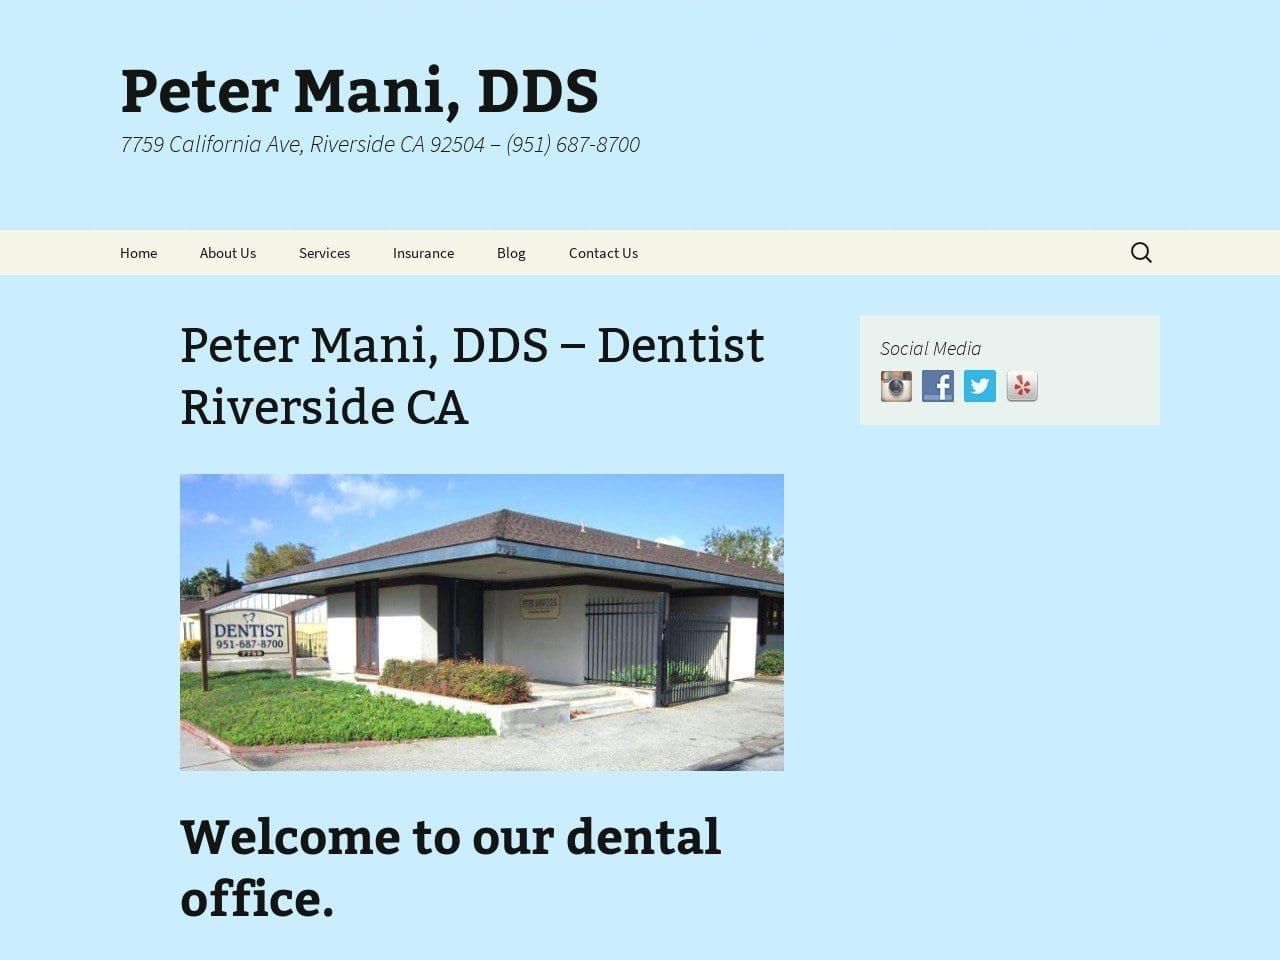 Peter Mani DDS Website Screenshot from riversidecadentist.com